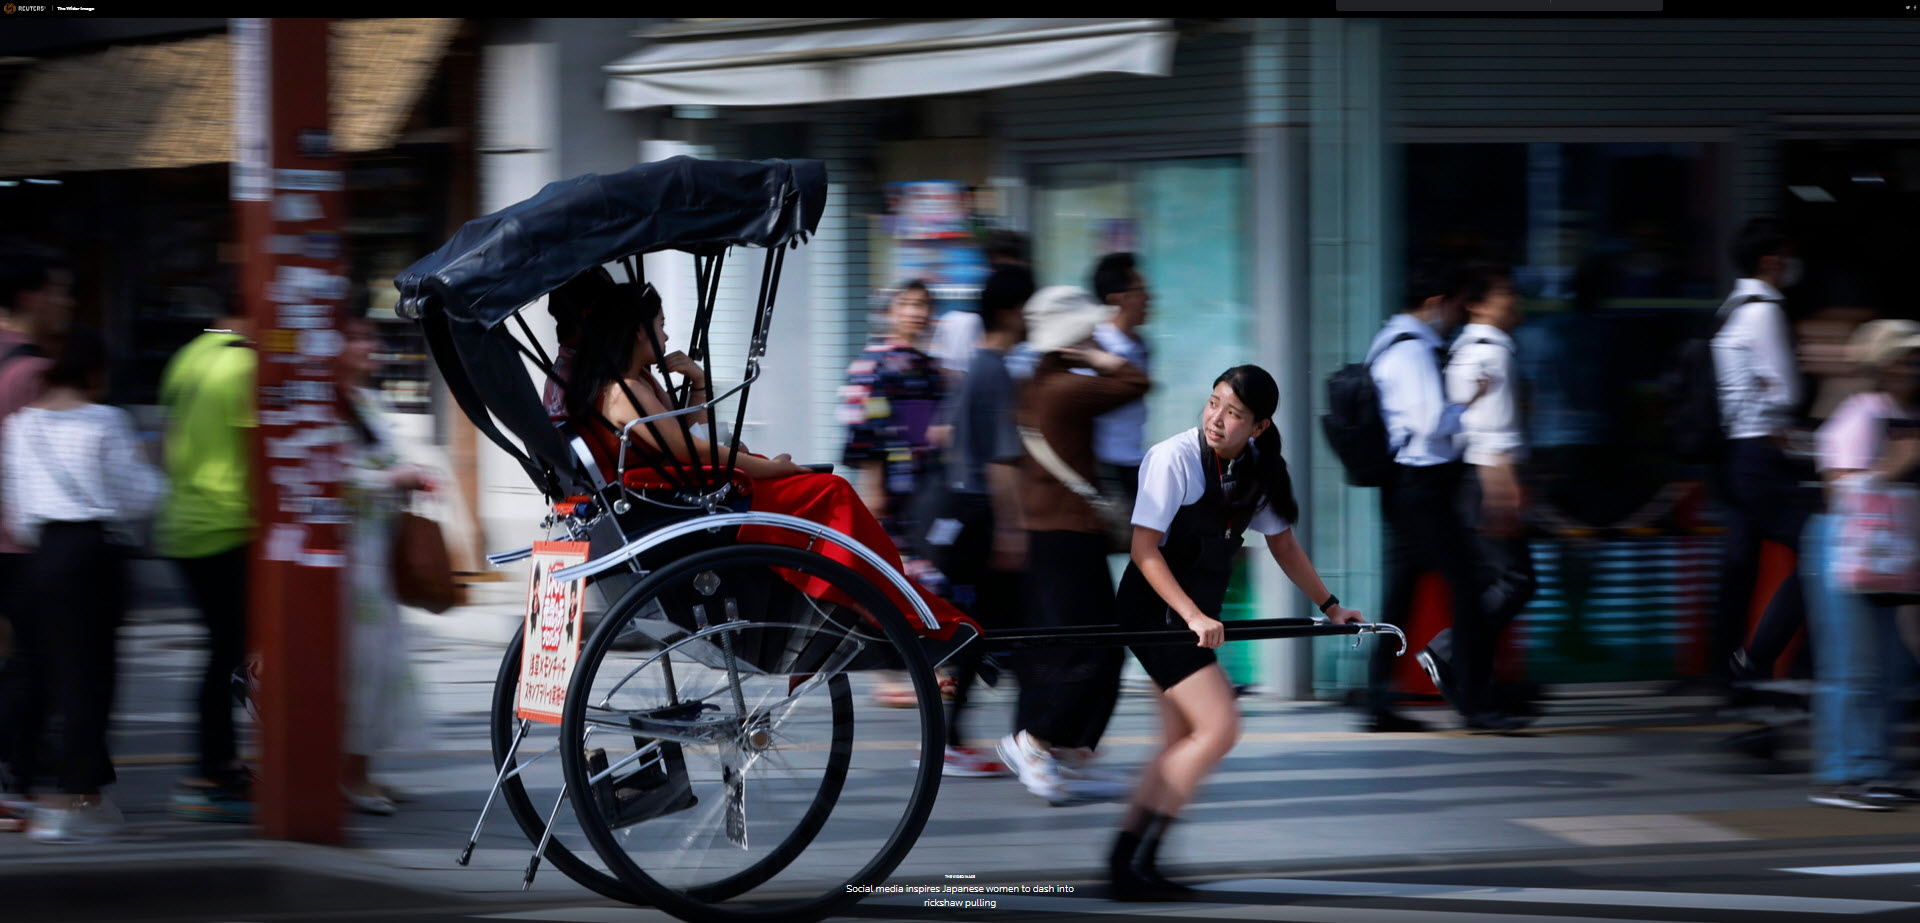 Hình ảnh: Những cô gái kéo xe xích lô ở Tokyo, tuổi đôi mươi, thu nhập gấp 2-3 mức GDP bình quân